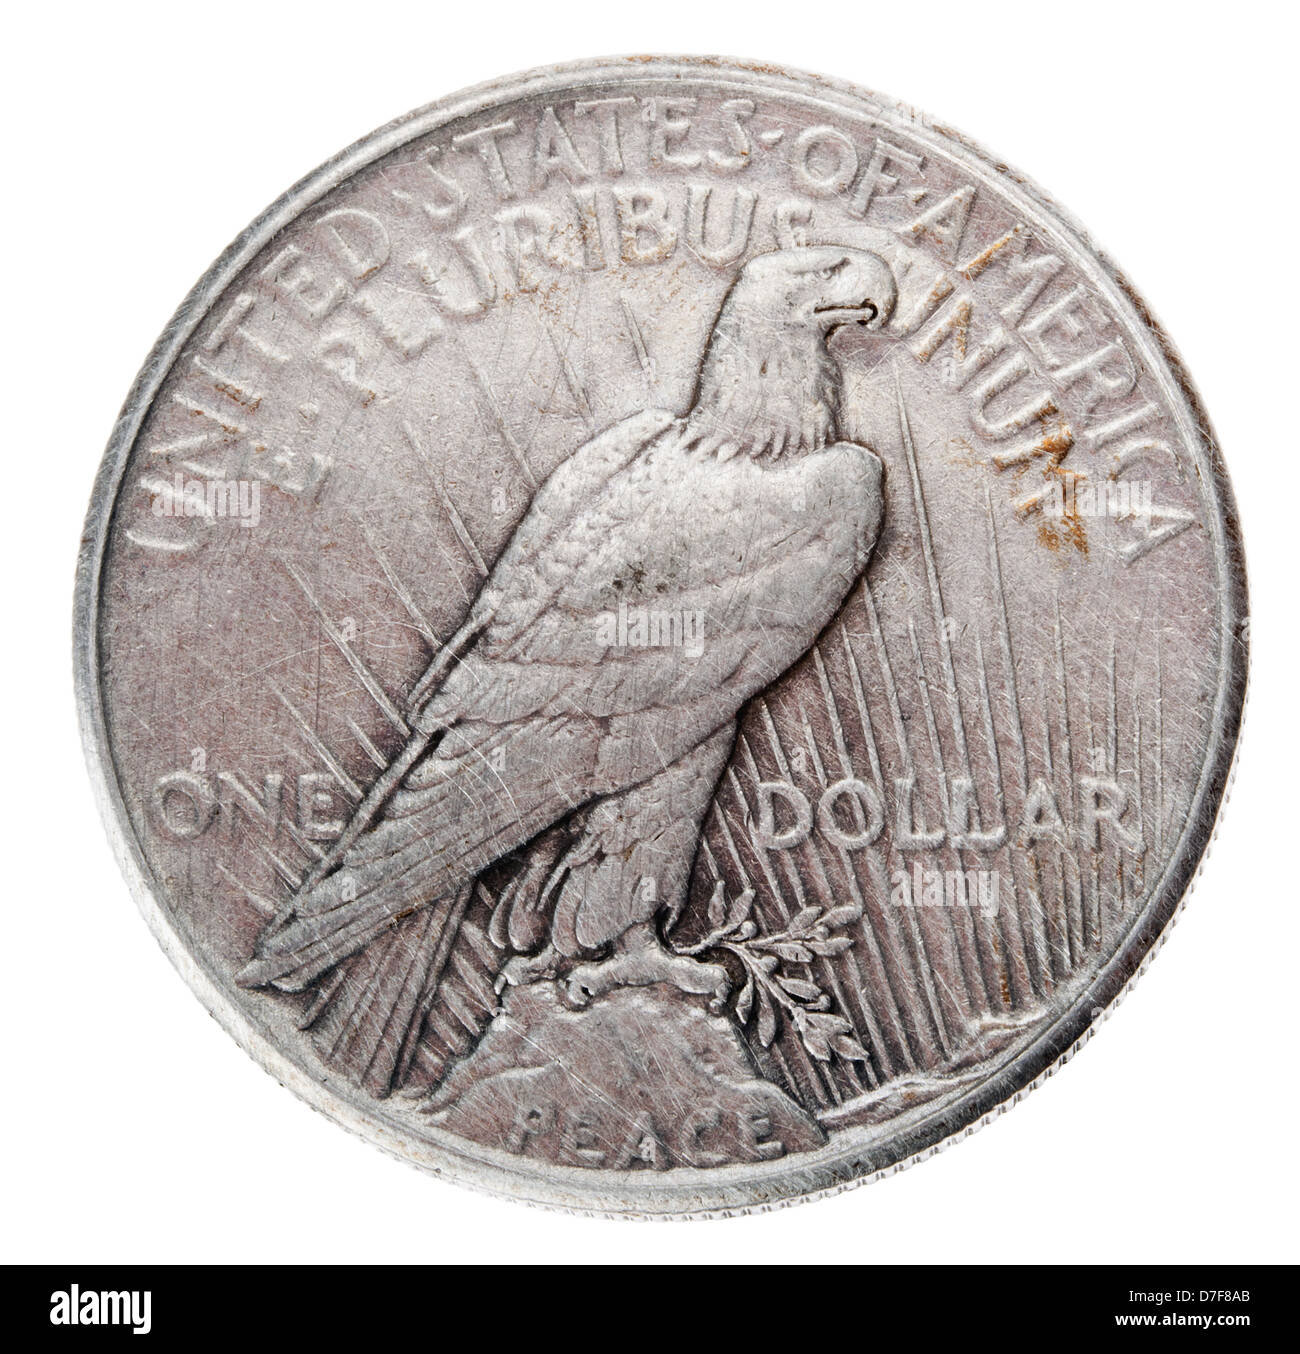 Frontaler Ansicht Rückseite (tails) Seite Silberdollar 1925 bekannt unter Namen "Peace Dollar" geprägt. Weißkopf-Seeadler ist dargestellt, in Ruhe Stockfoto